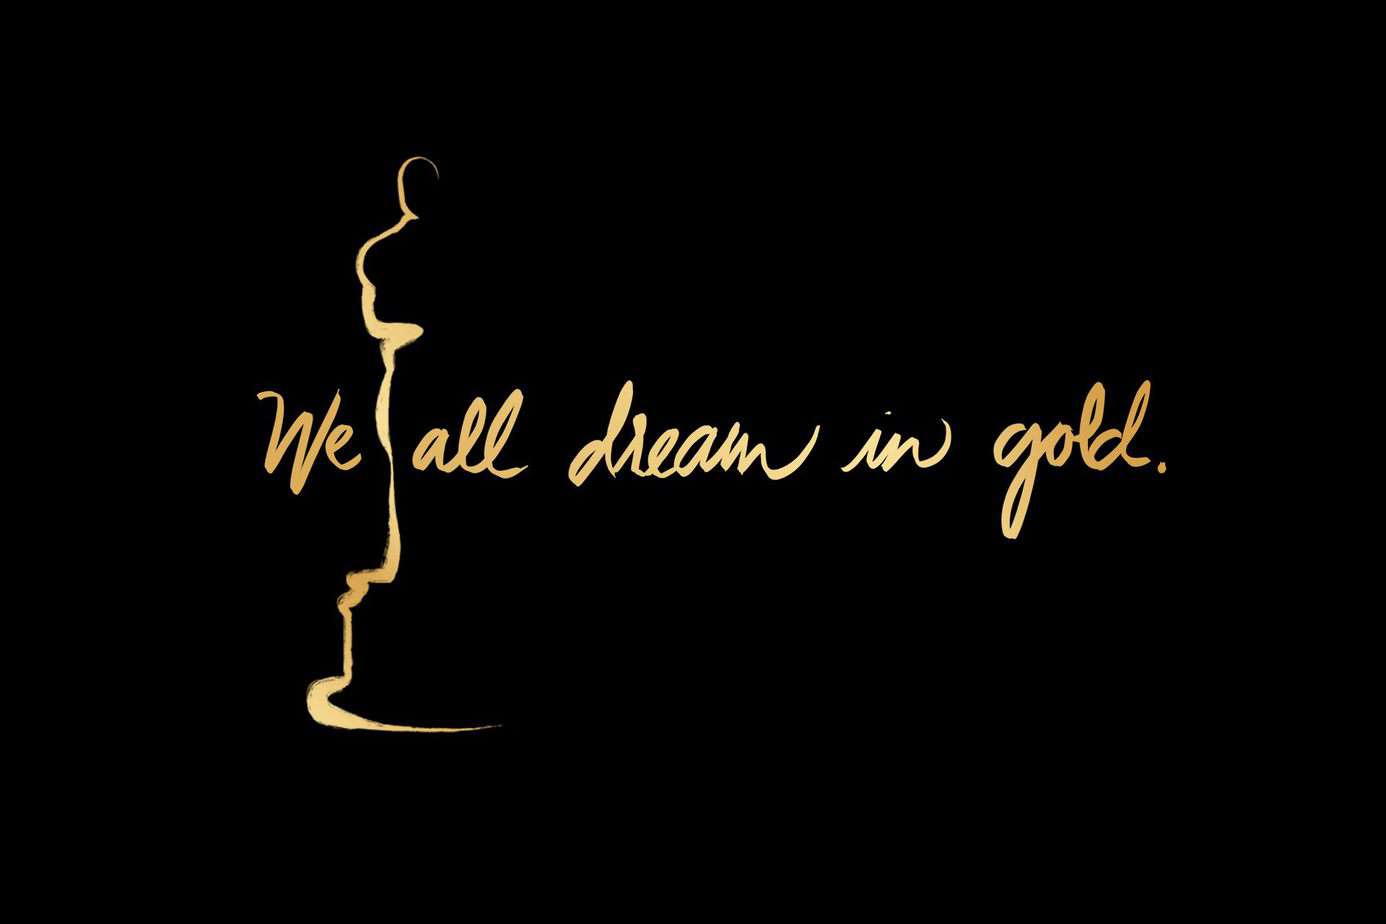 Oscar 2019 Dobitnici